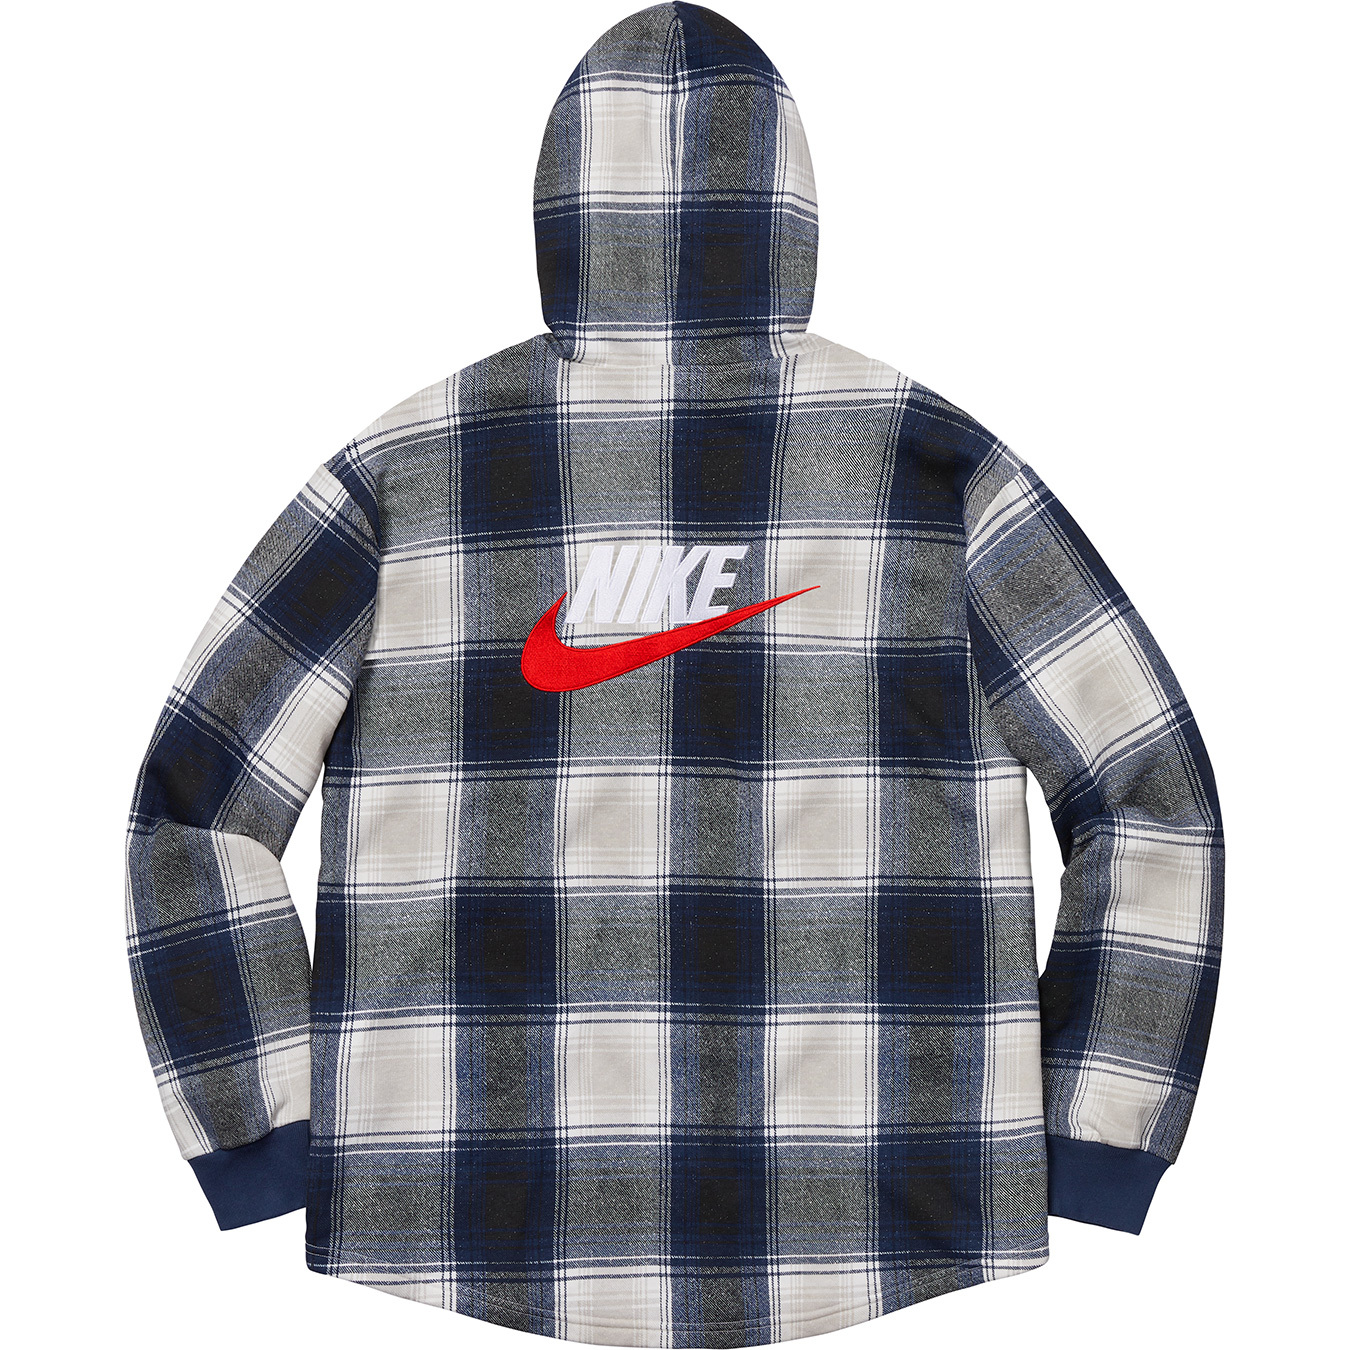 Nike Plaid Hooded Sweatshirt - fall winter 2018 - Supreme